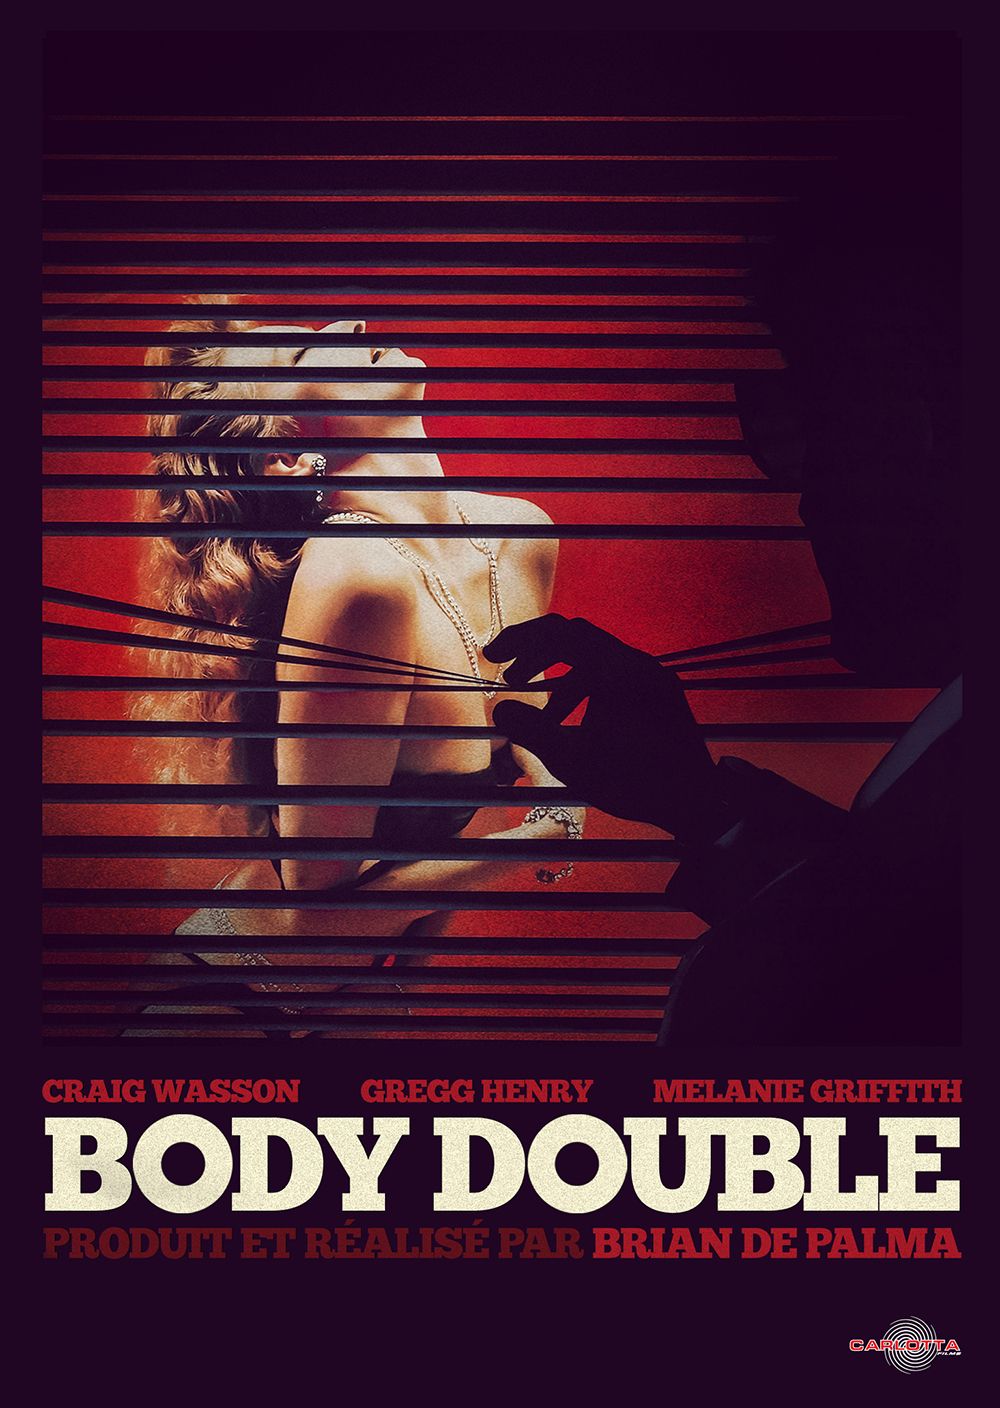 Résultat de recherche d'images pour "body double affiche"